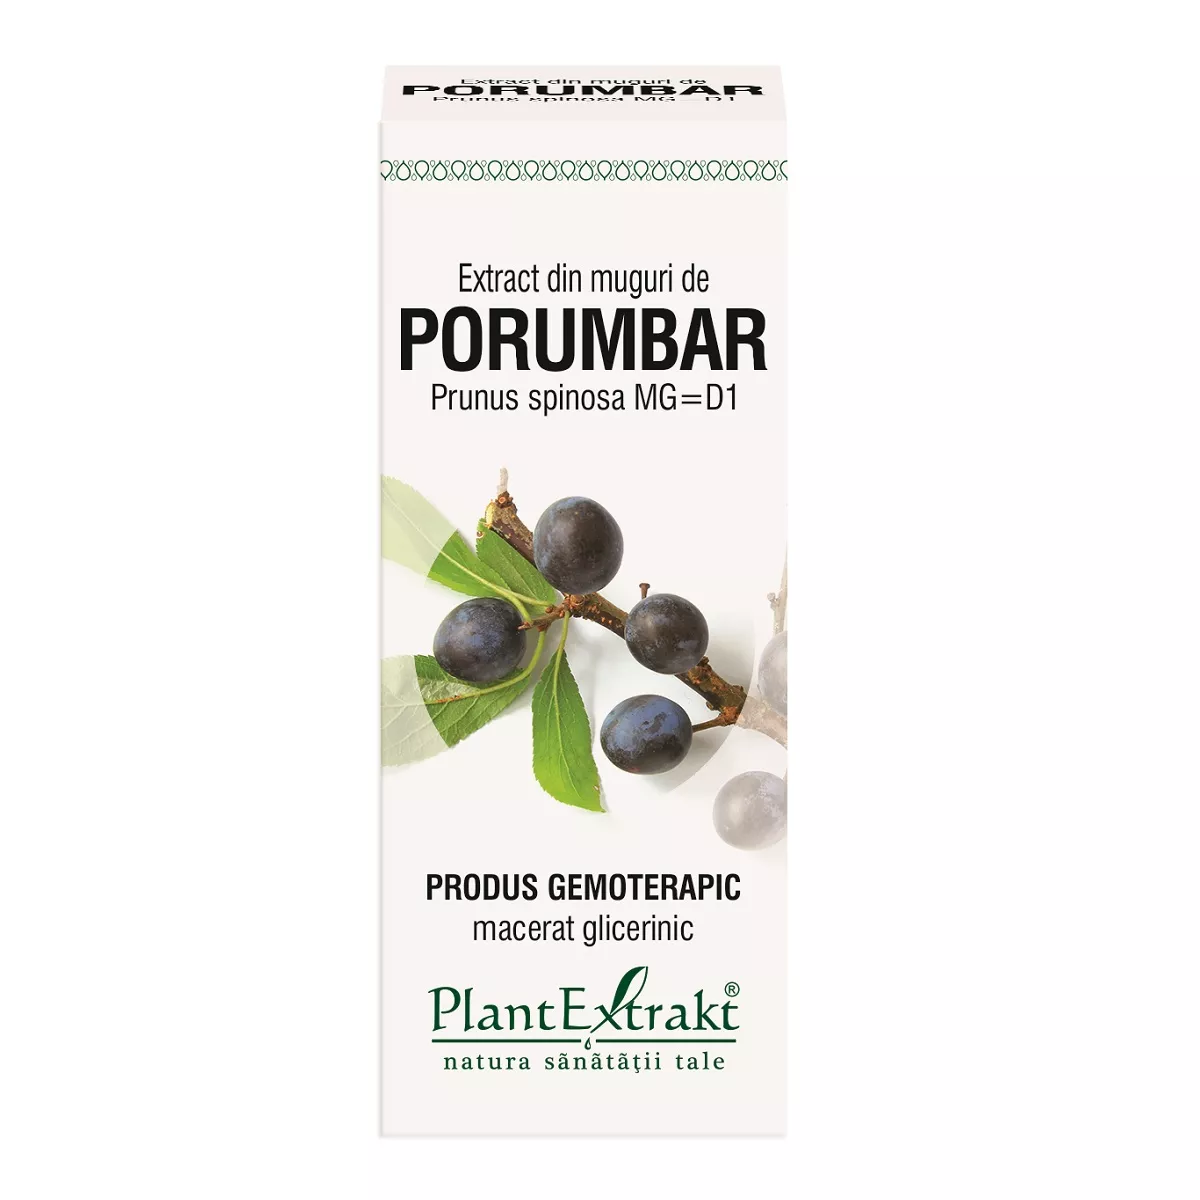 Extract din muguri de porumbar, 50 ml, Plantextrakt, [],remediumfarm.ro